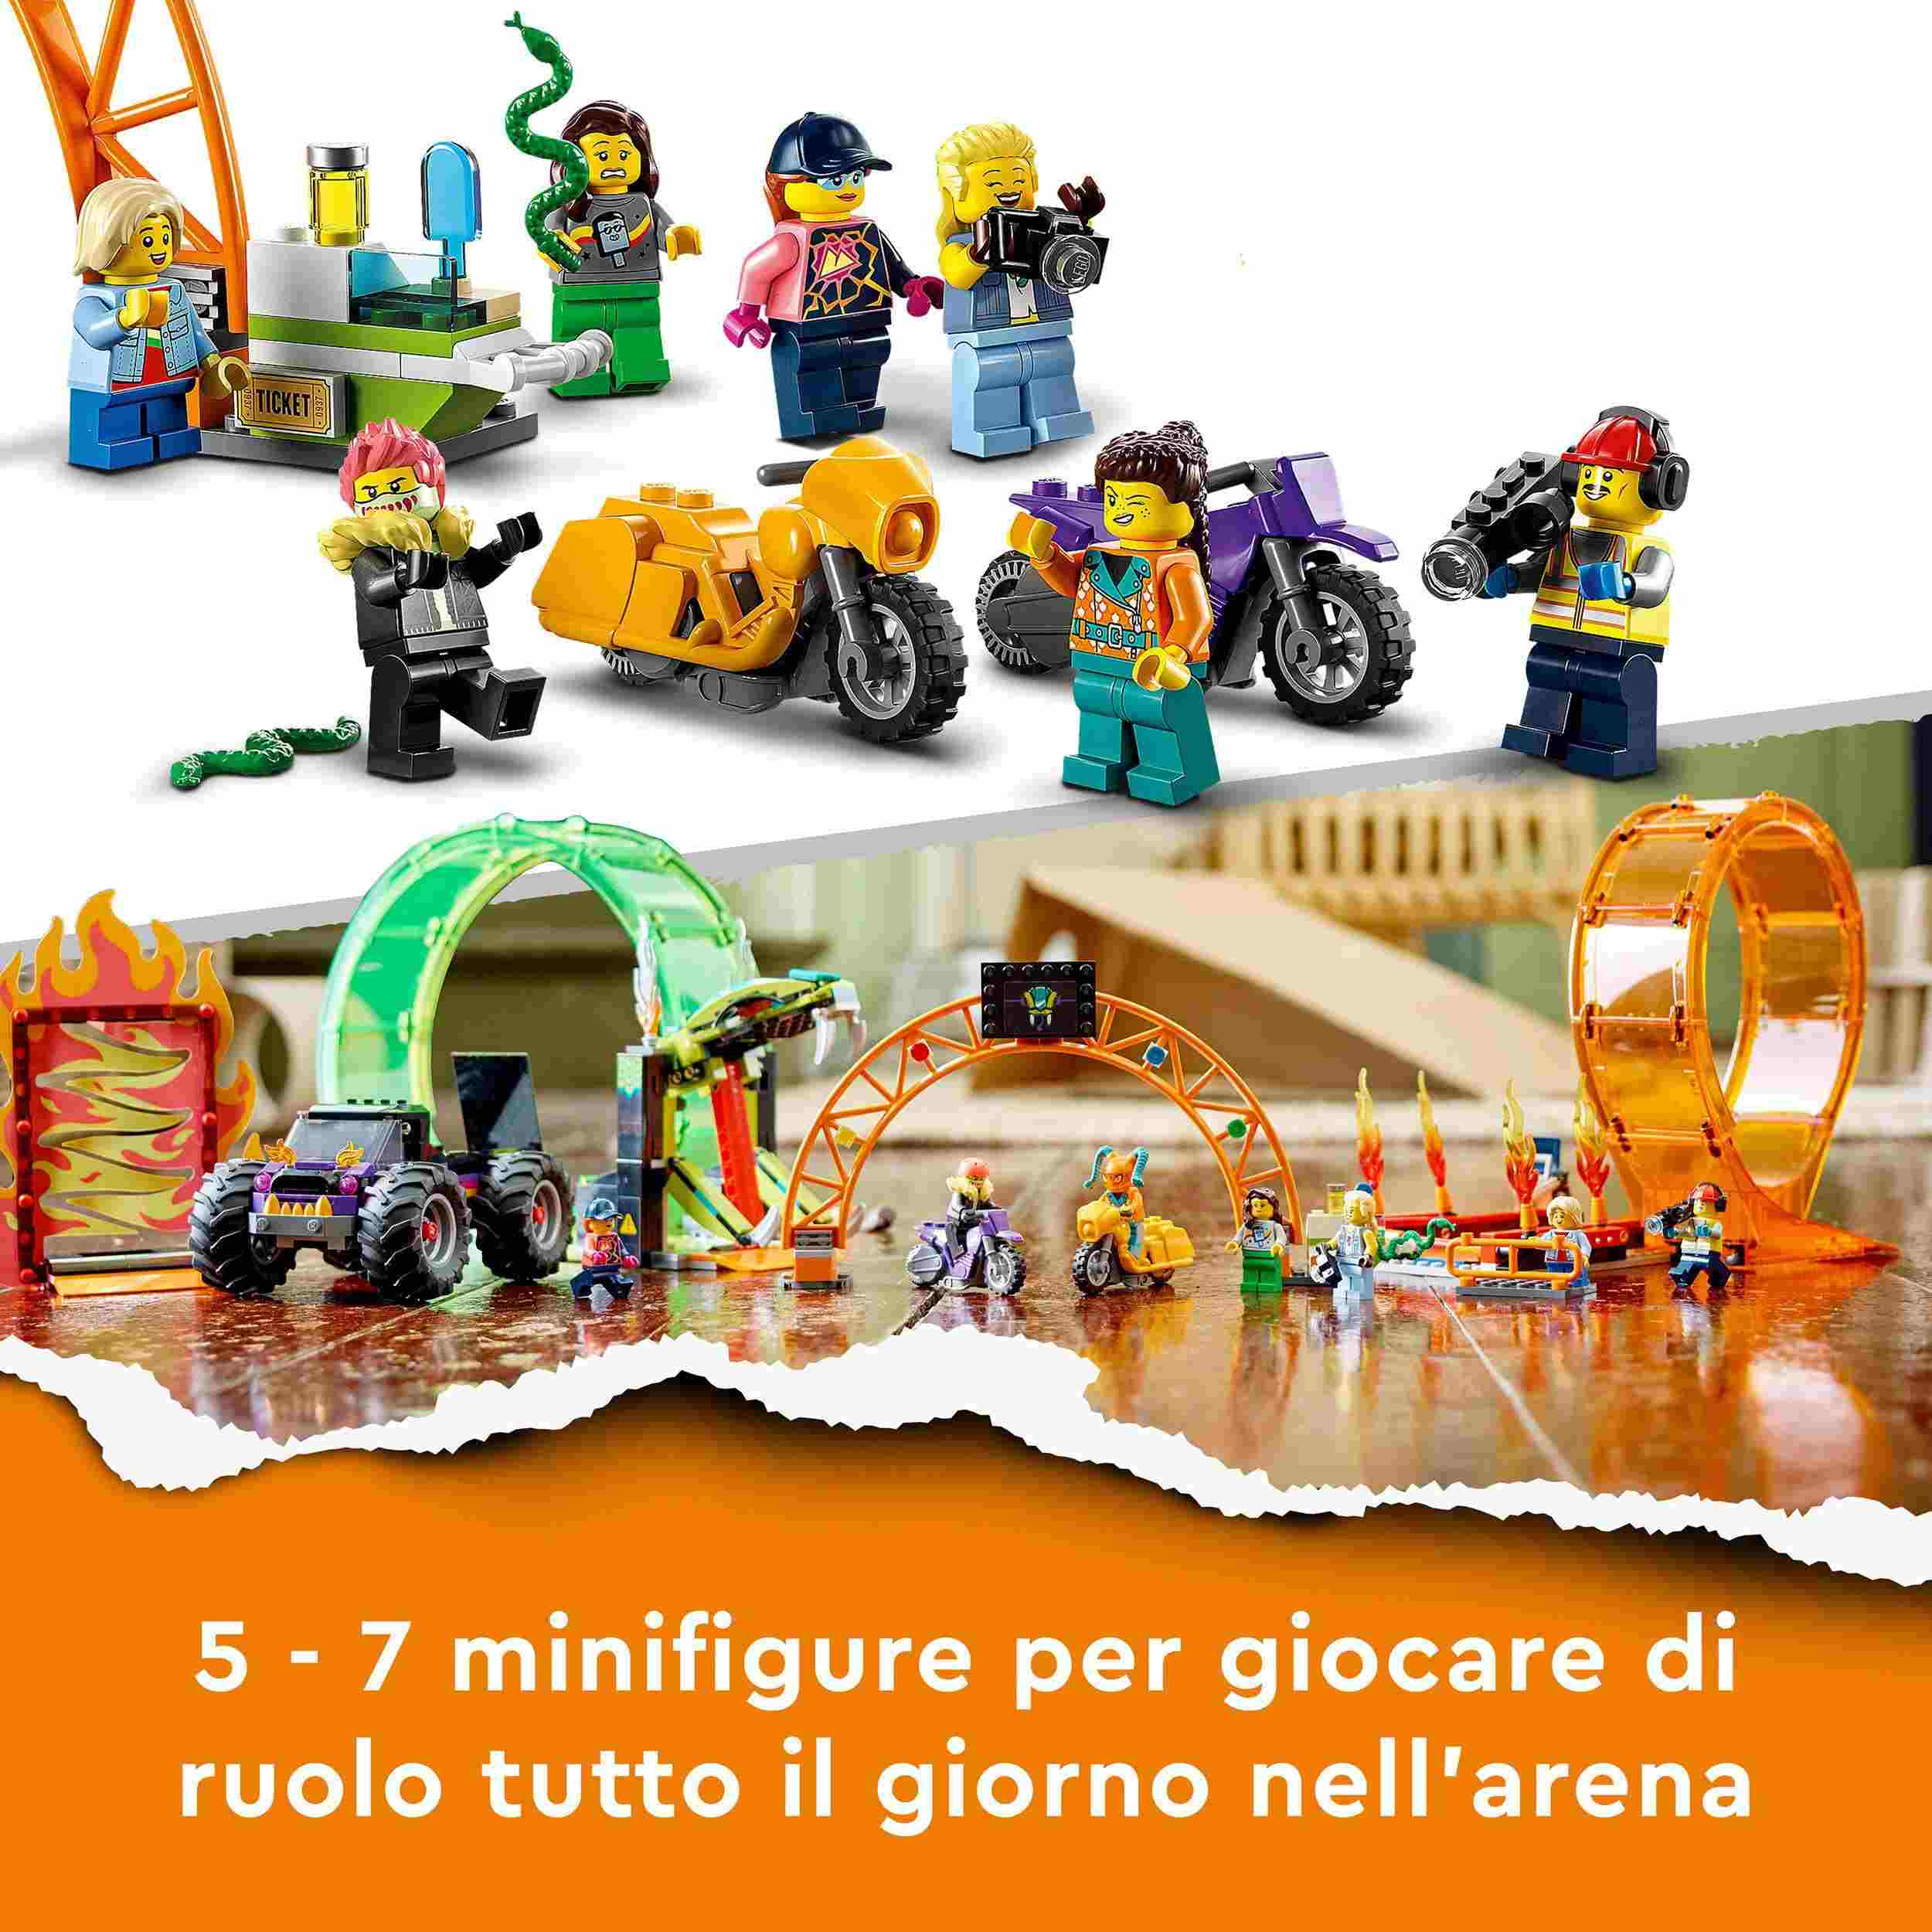 Lego city stuntz 60339 arena delle acrobazie, monster truck, moto giocattolo con minifigure, giochi per bambini dai 7 anni - LEGO CITY, LEGO CITY STUNTZ, Lego